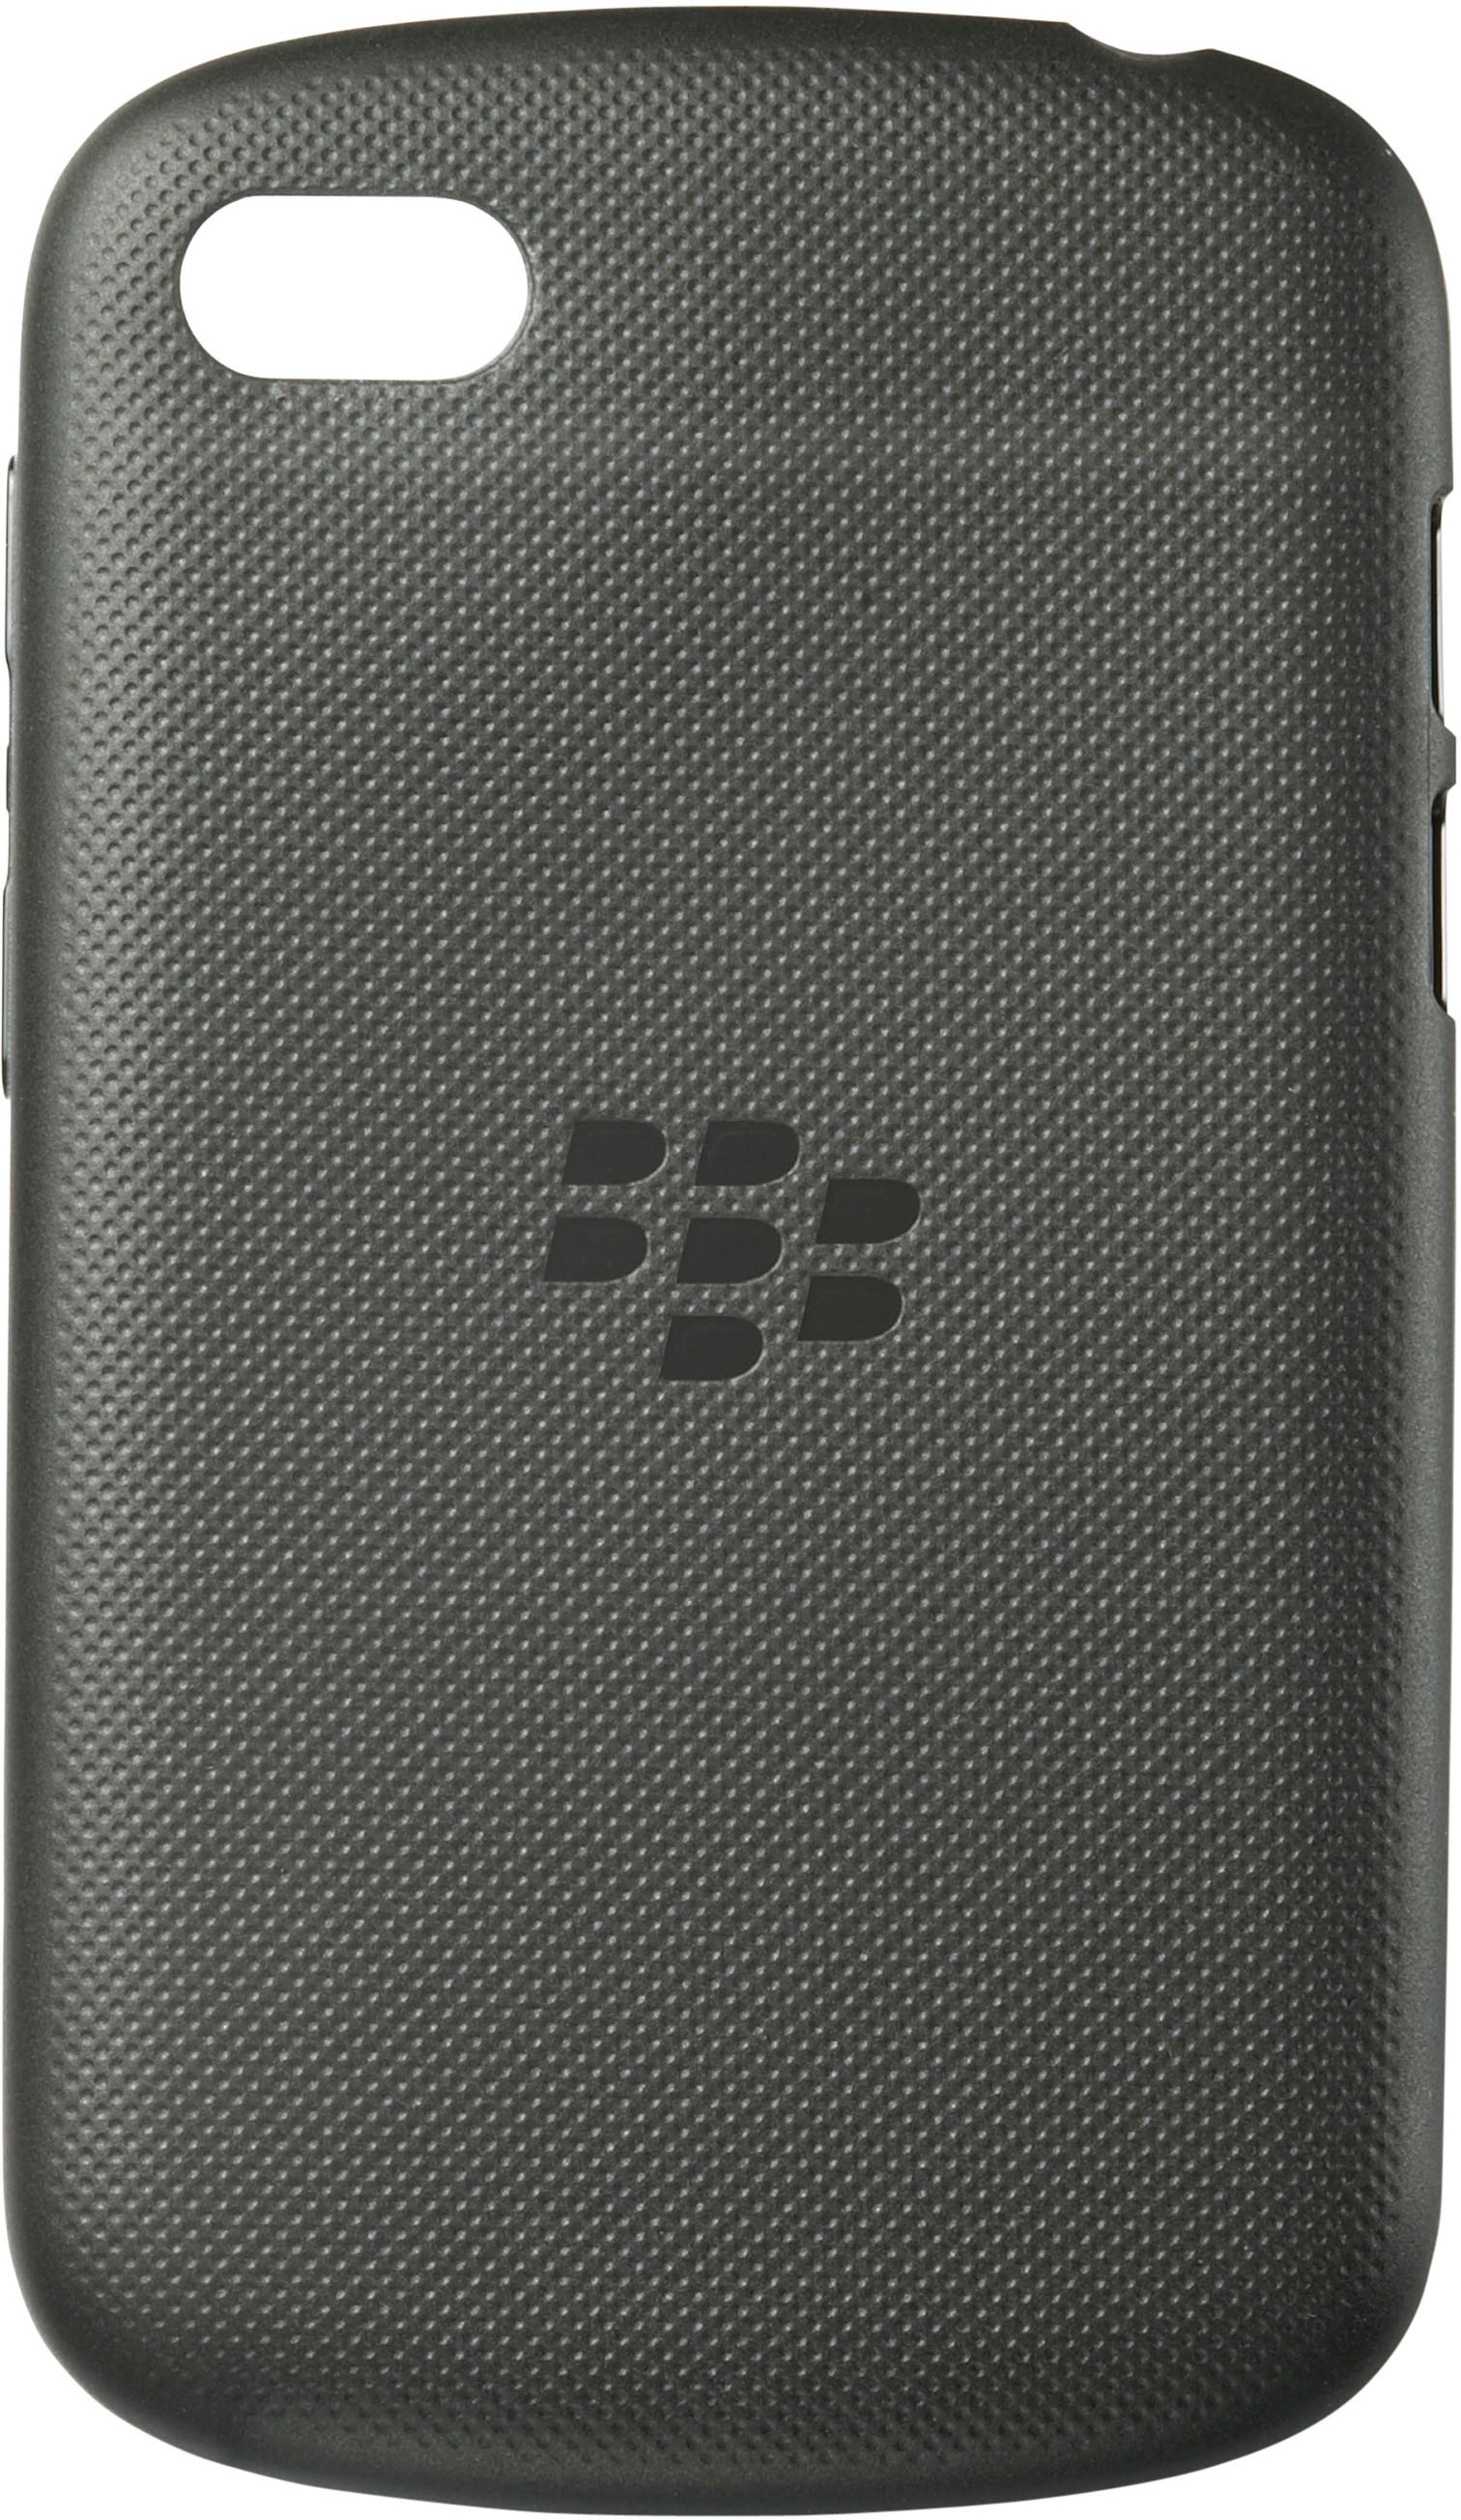 Q10 Blackberry, schwarz, Cover Schwarz Q10, für Soft BLACKBERRY